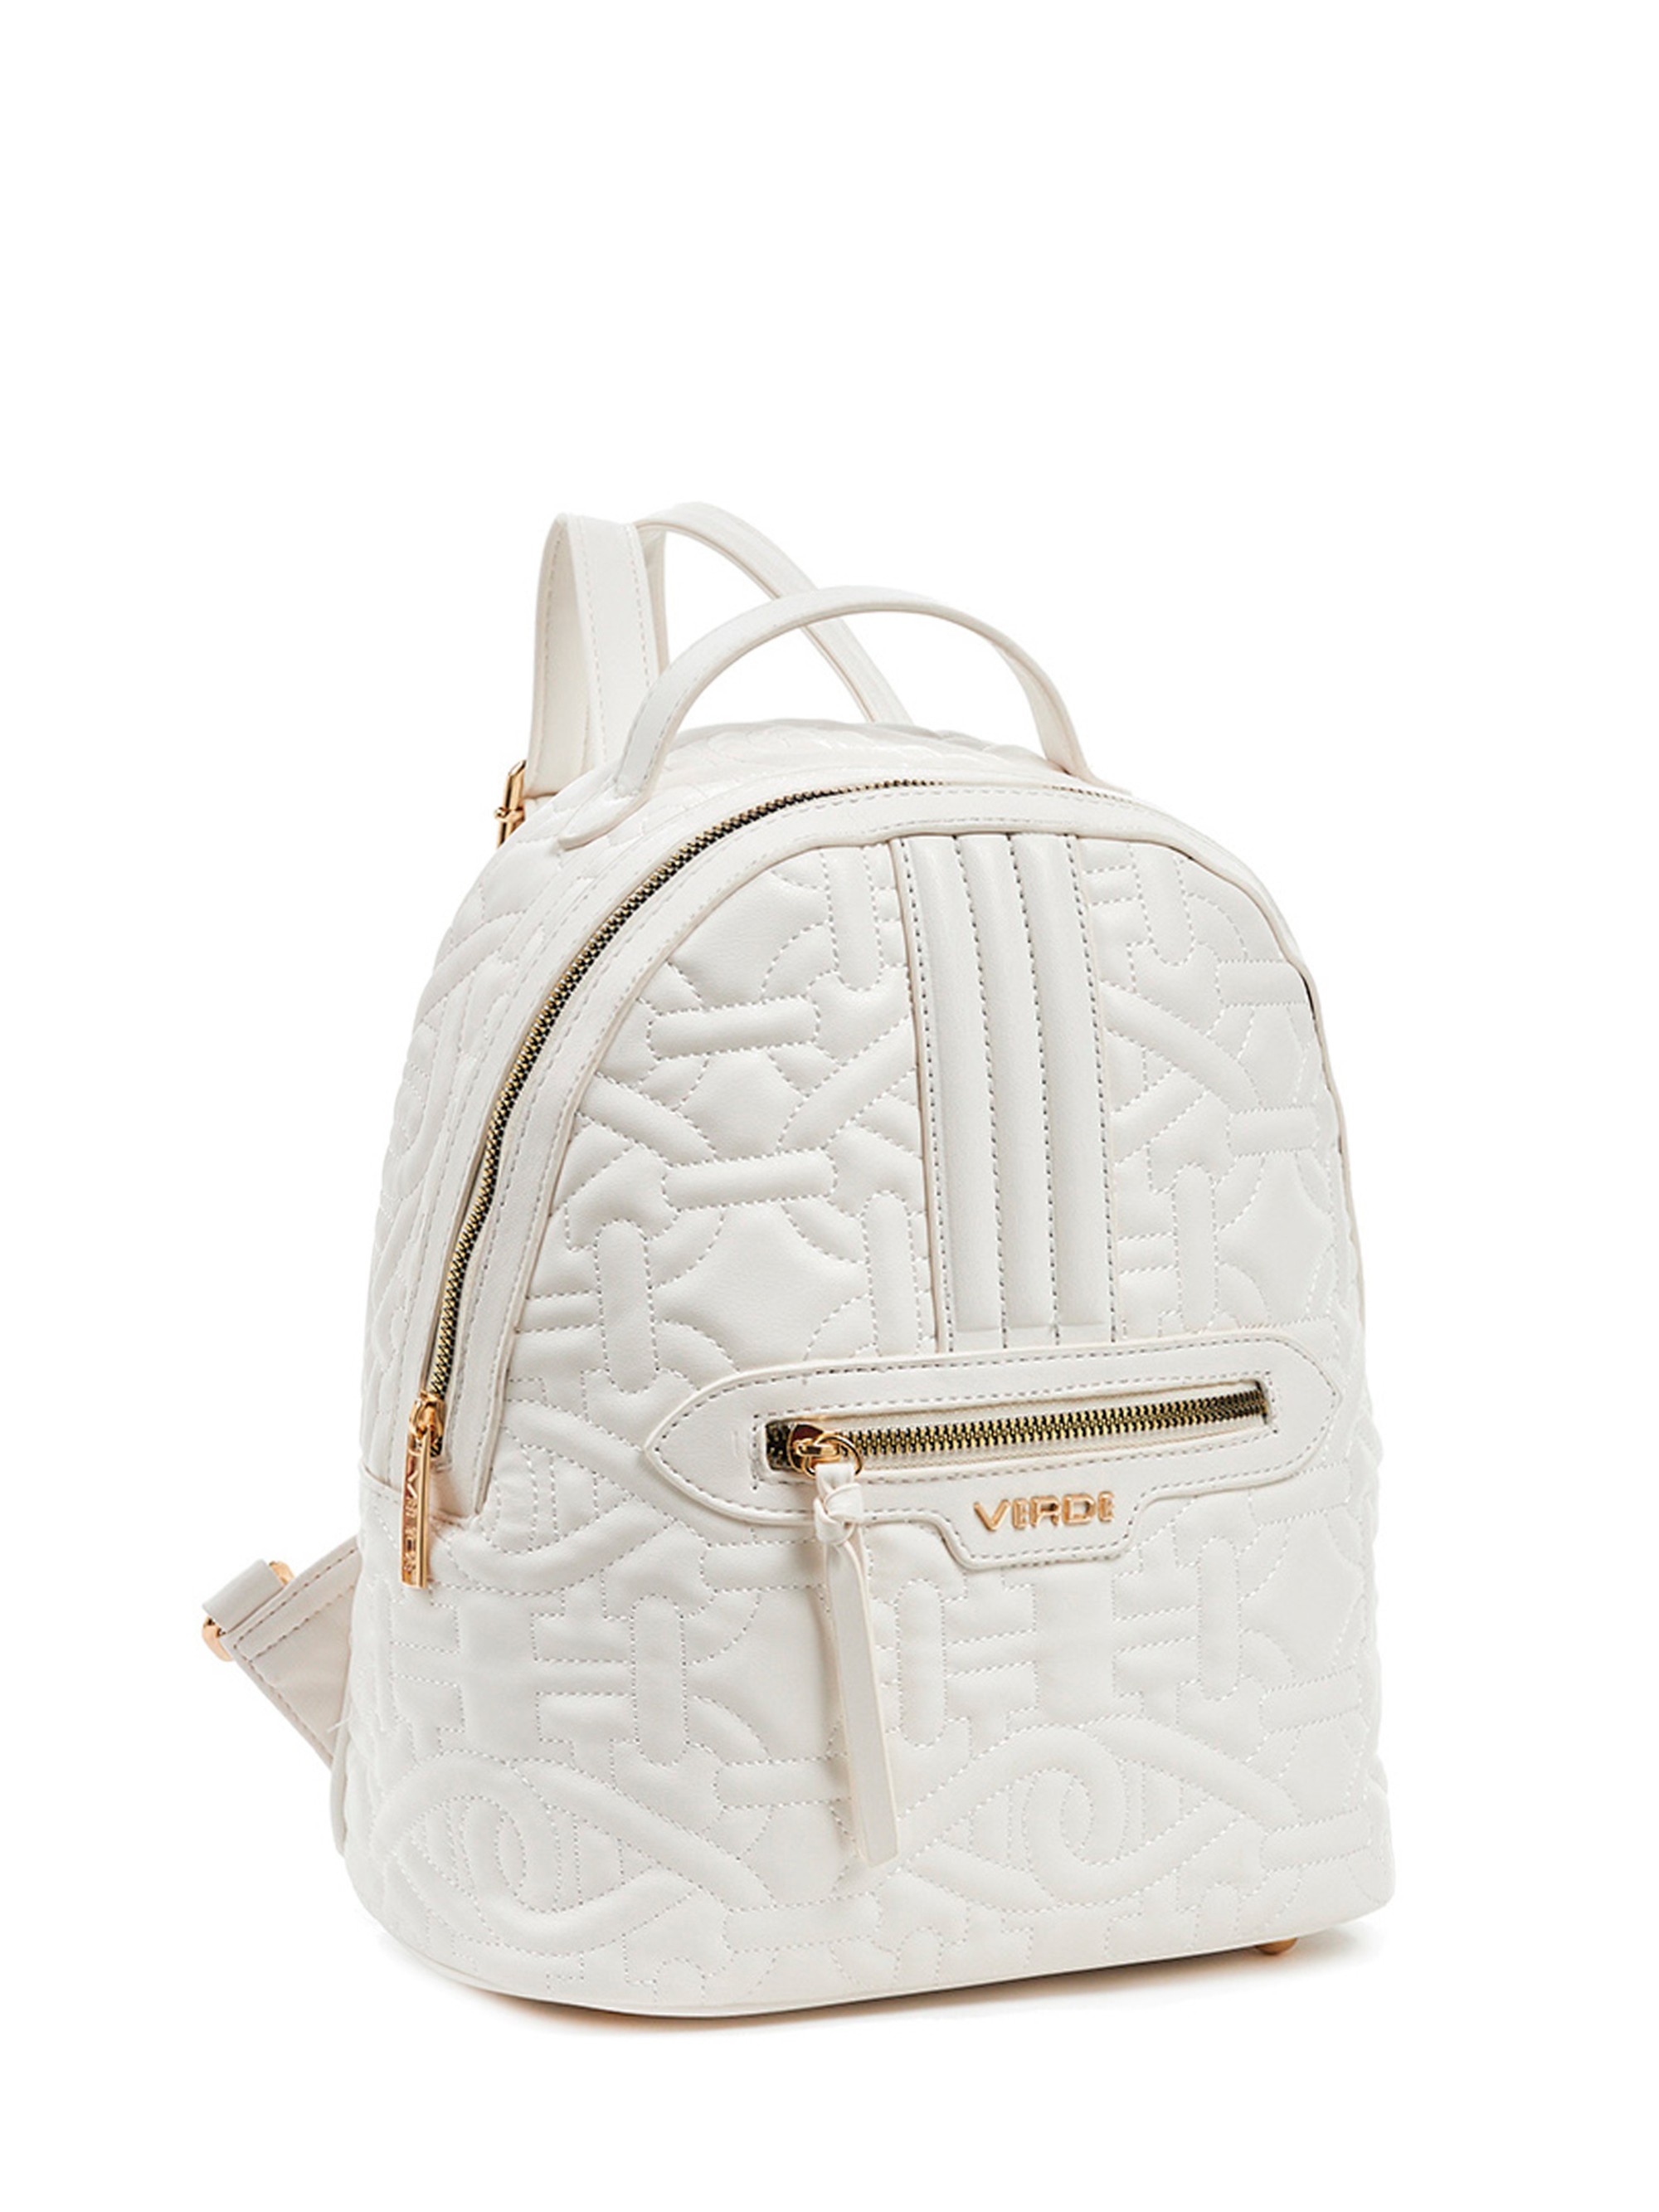 Рюкзак женский VERDE 6371ve-16 white, 26х15х29 см